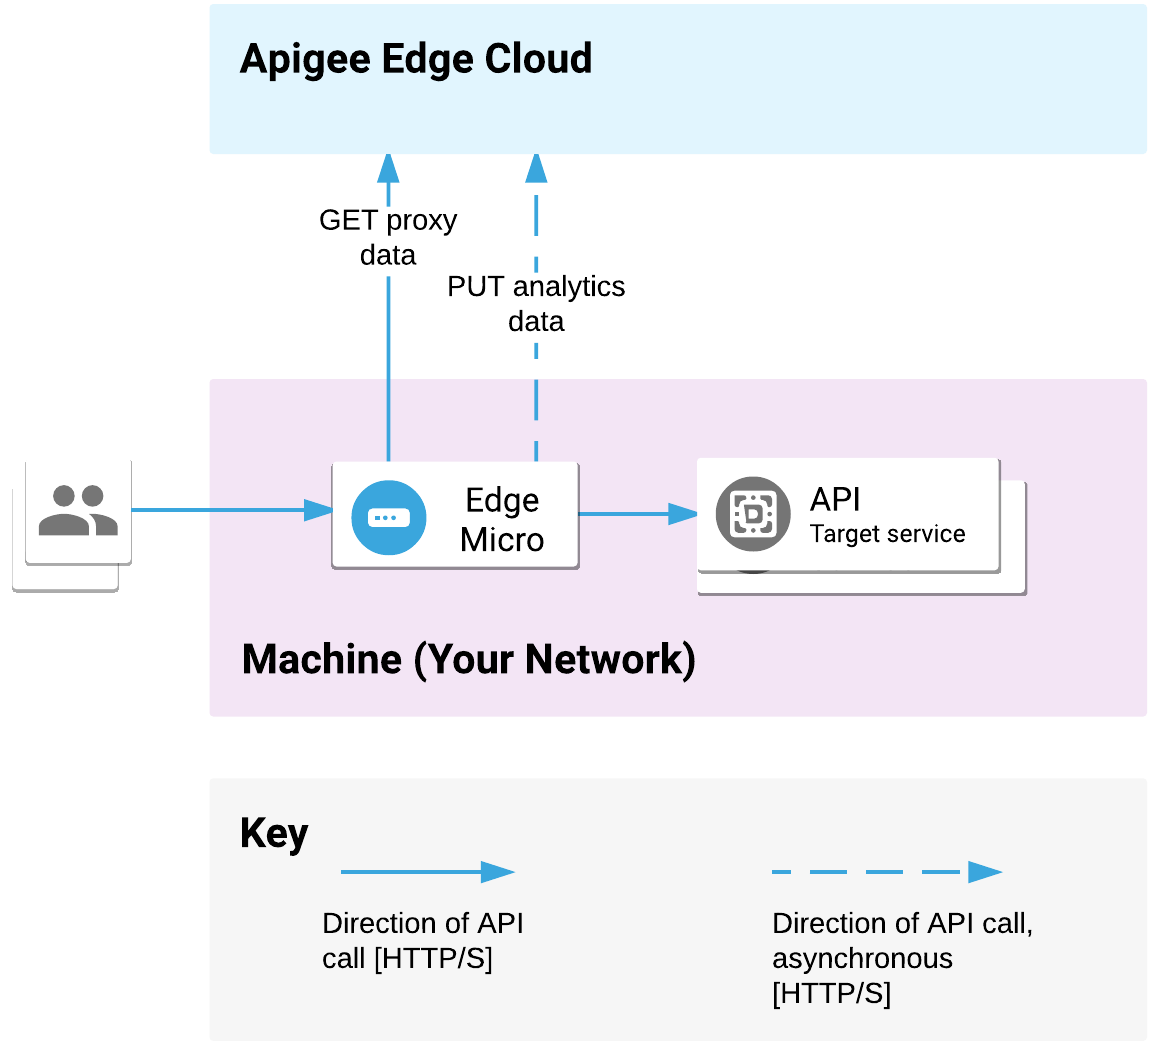 边缘微网关部署在您的网络上。它会处理来自客户端的 API 请求并调用目标服务。微网关使用 Apigee Edge Cloud 来传递代理和分析数据。